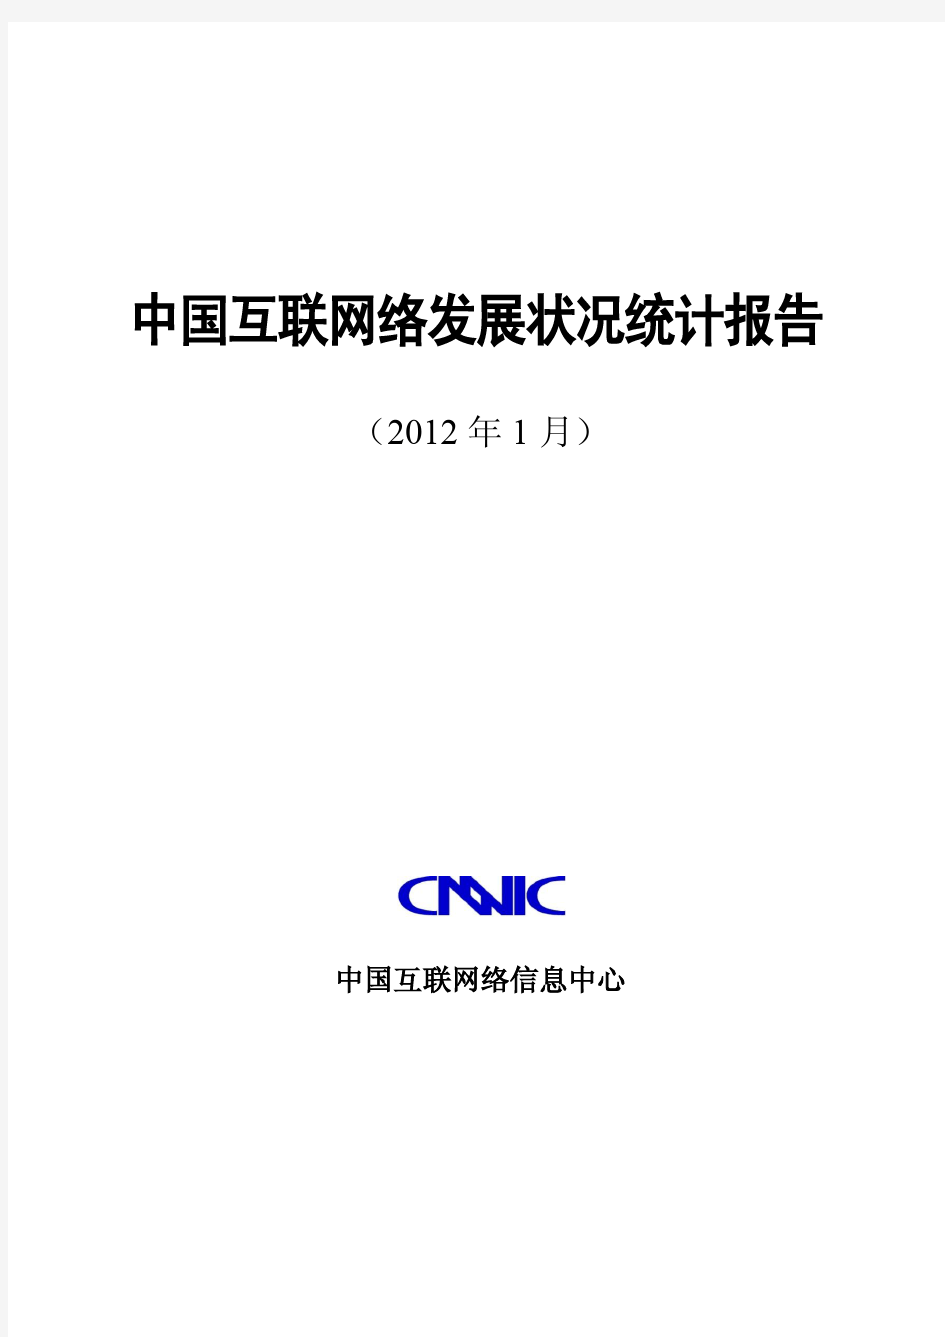 《第29次中国互联网络发展状况调查统计报告》